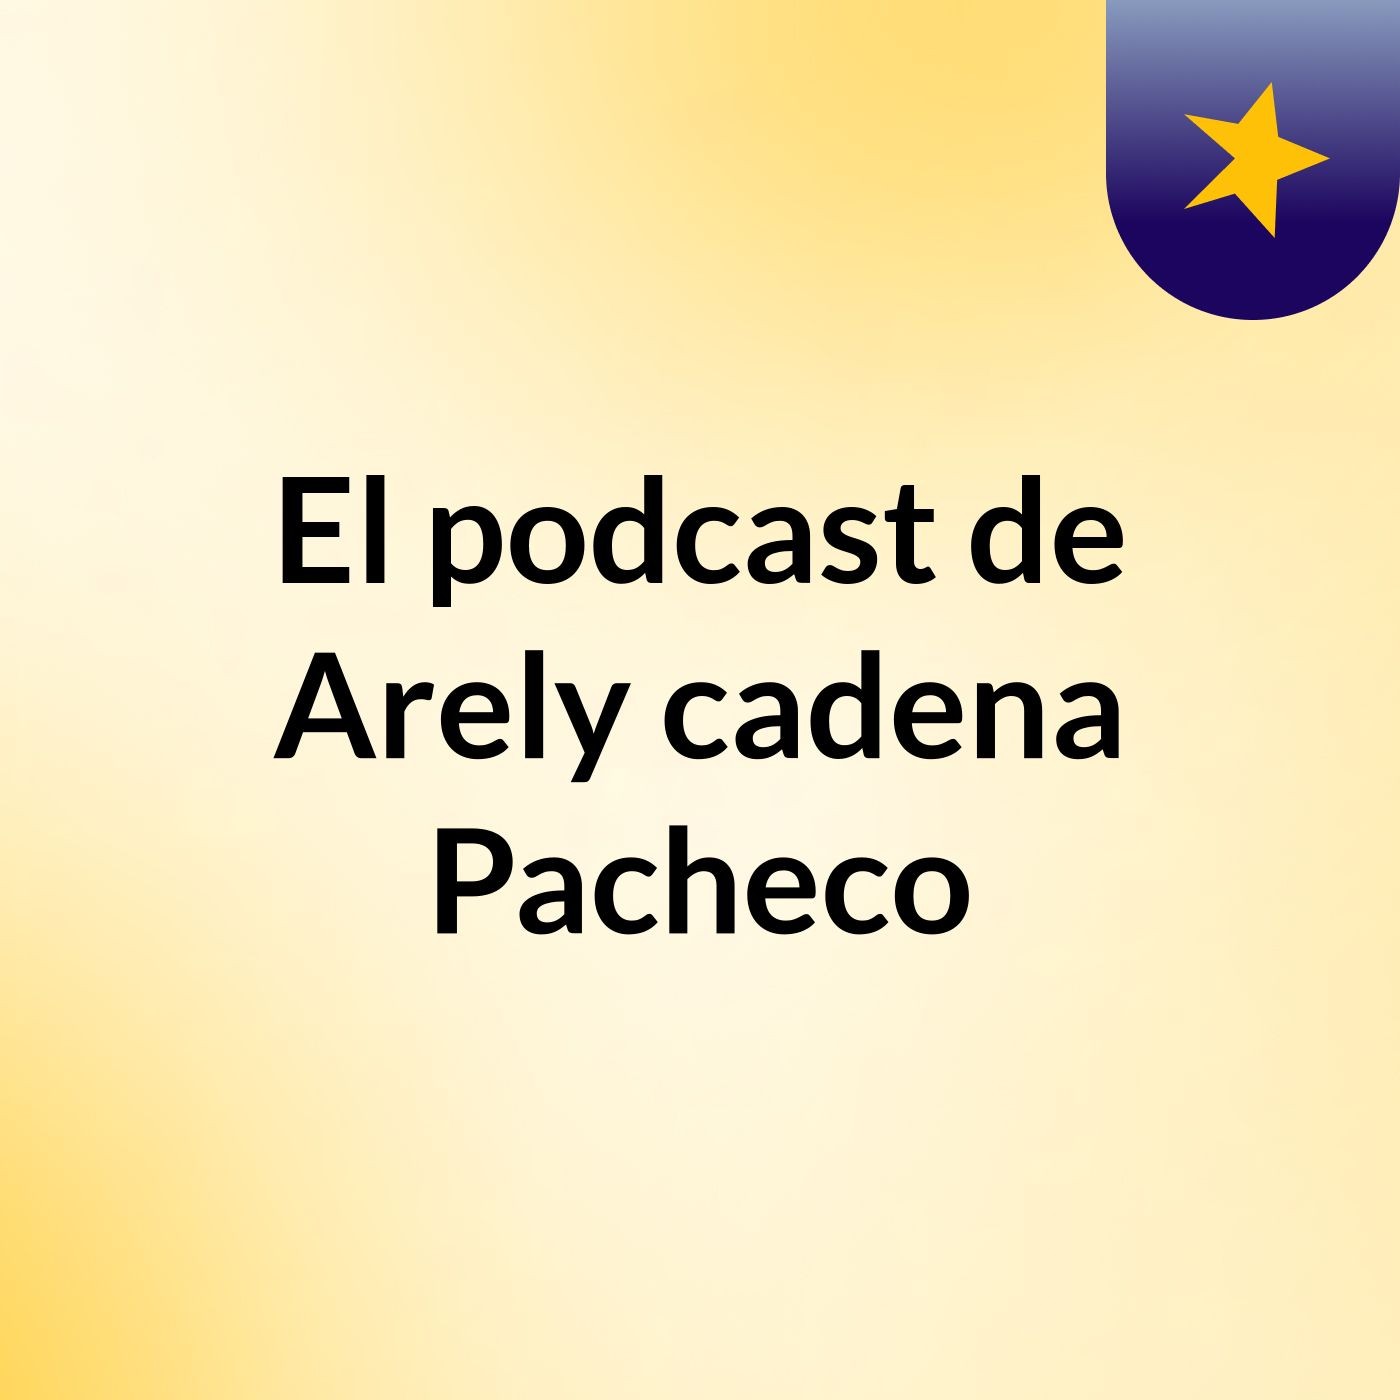 El podcast de Arely cadena Pacheco